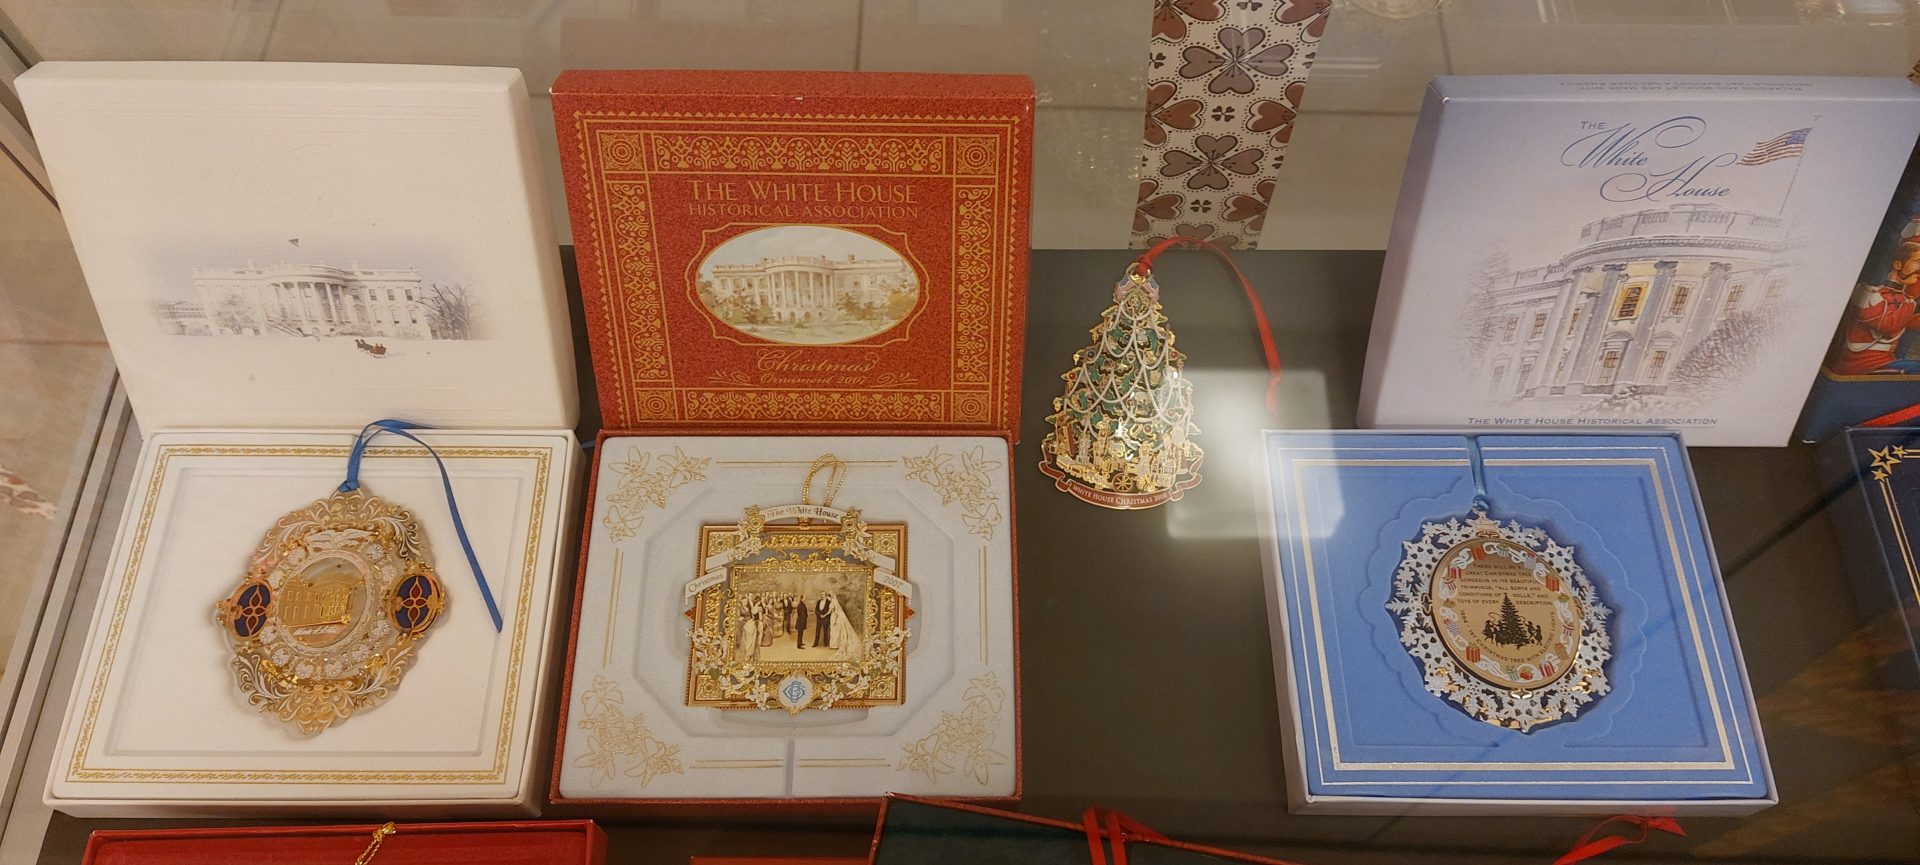 20231206 150110 - Božični okraski Zgodovinskega združenja Bele hiše - razstava zbirke Anite Leskovec